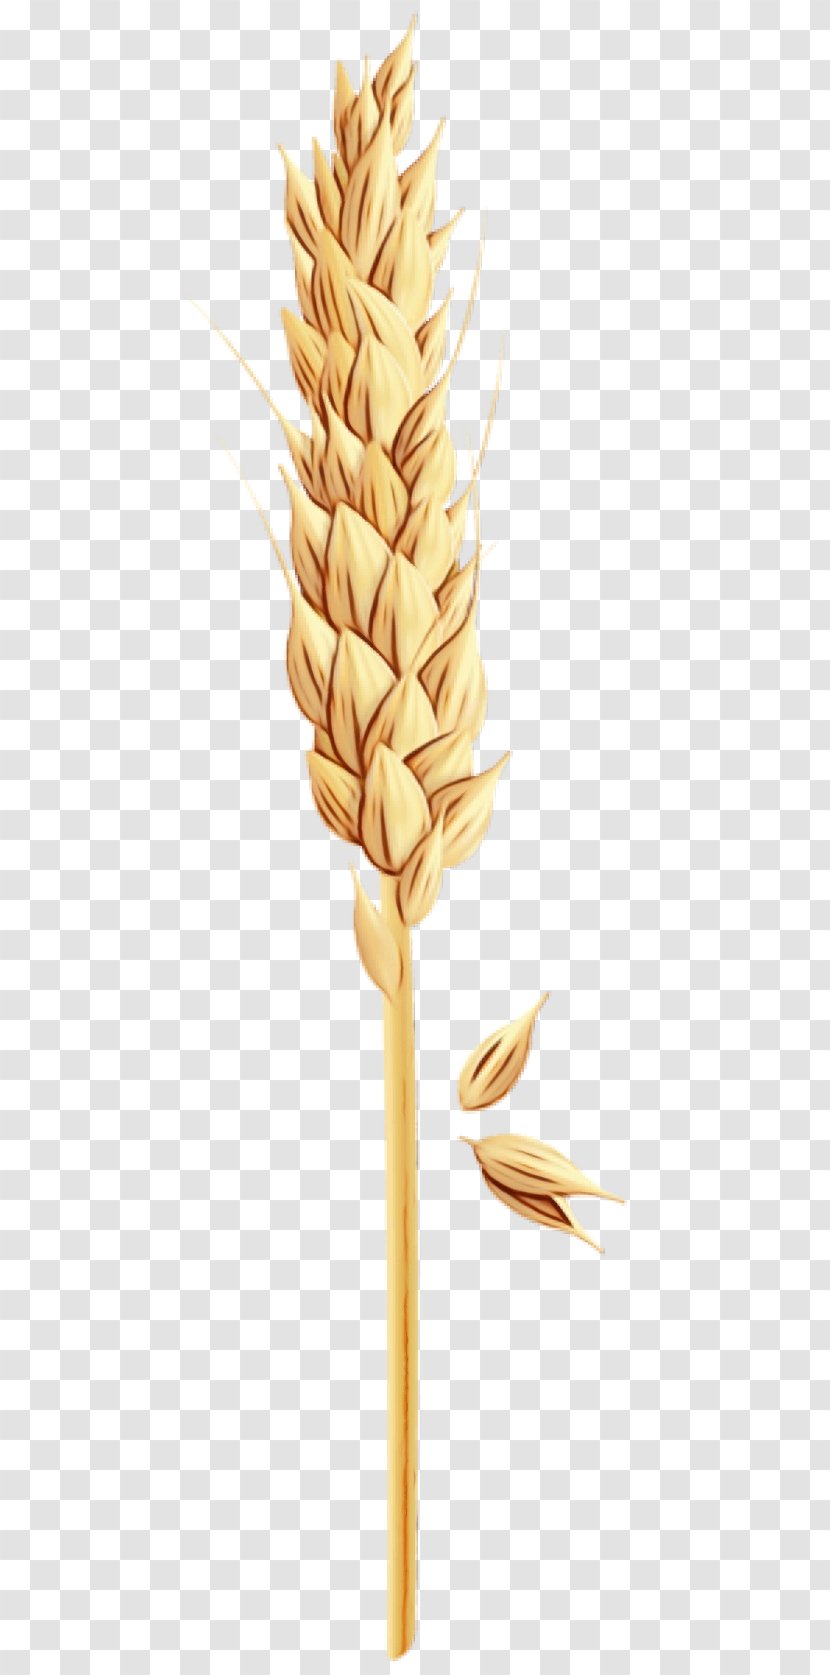 Wheat - Watercolor - Food Grain Transparent PNG